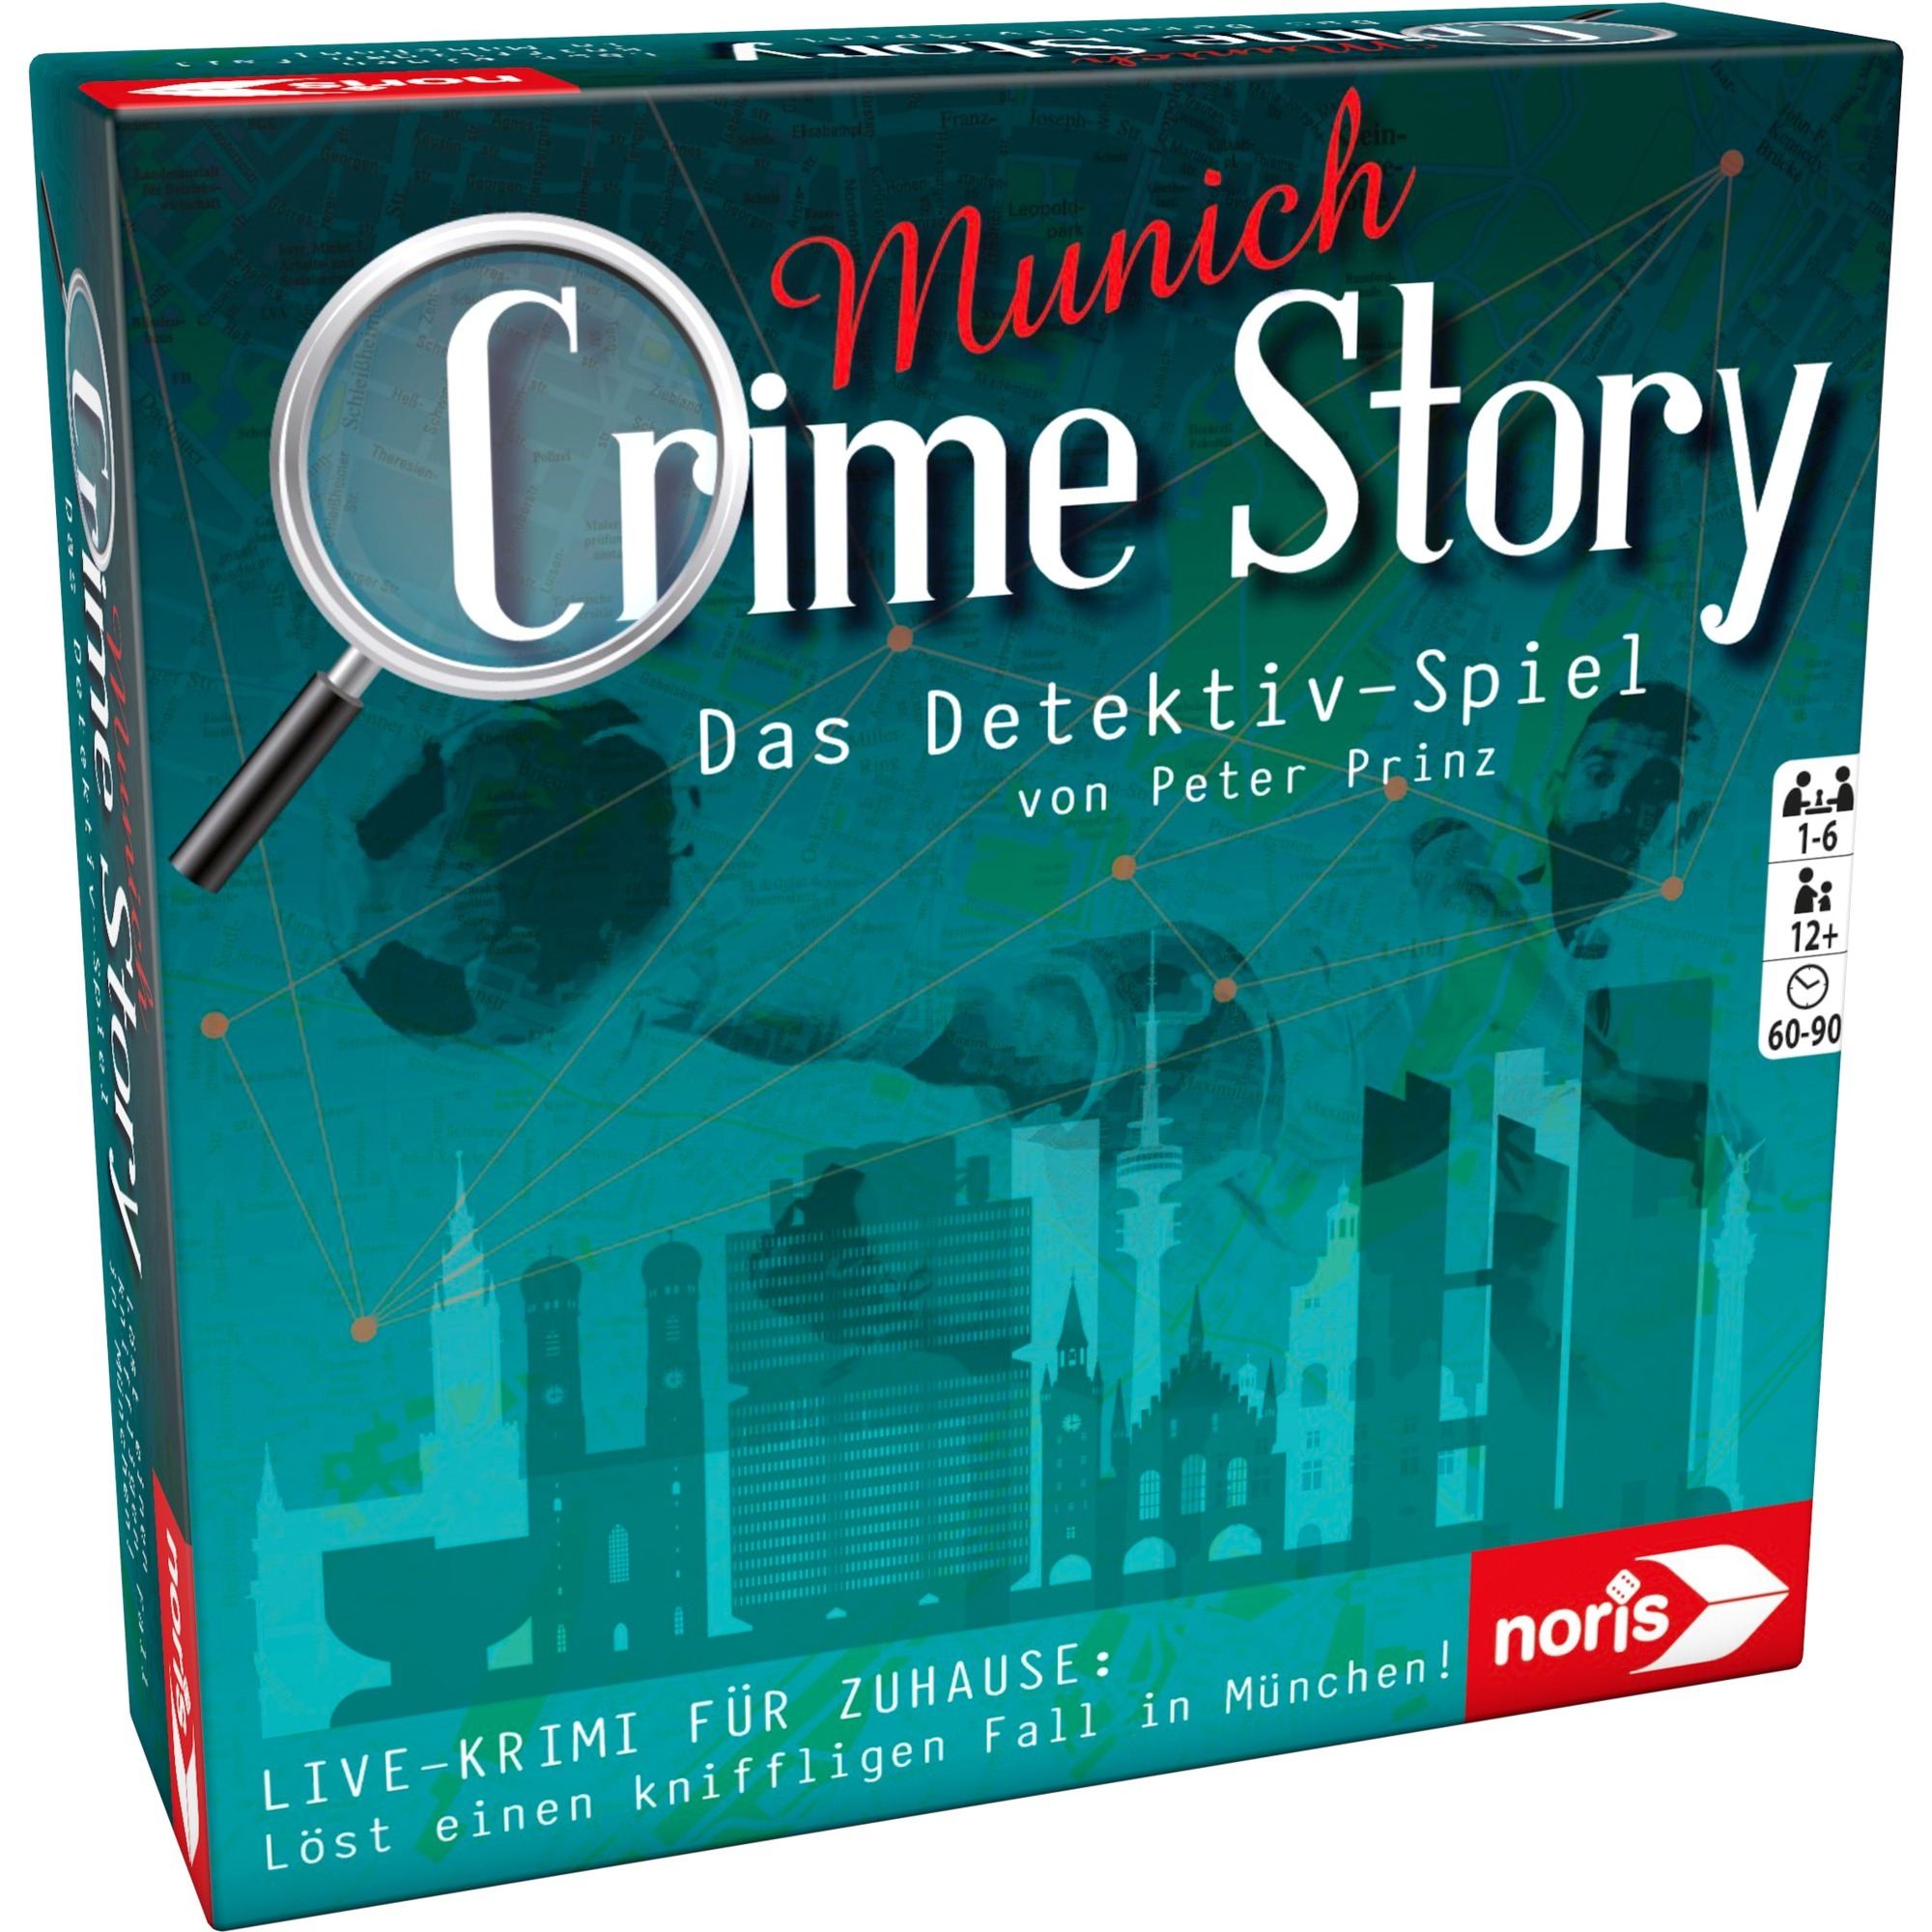 Image of Alternate - Crime Story - München, Partyspiel online einkaufen bei Alternate